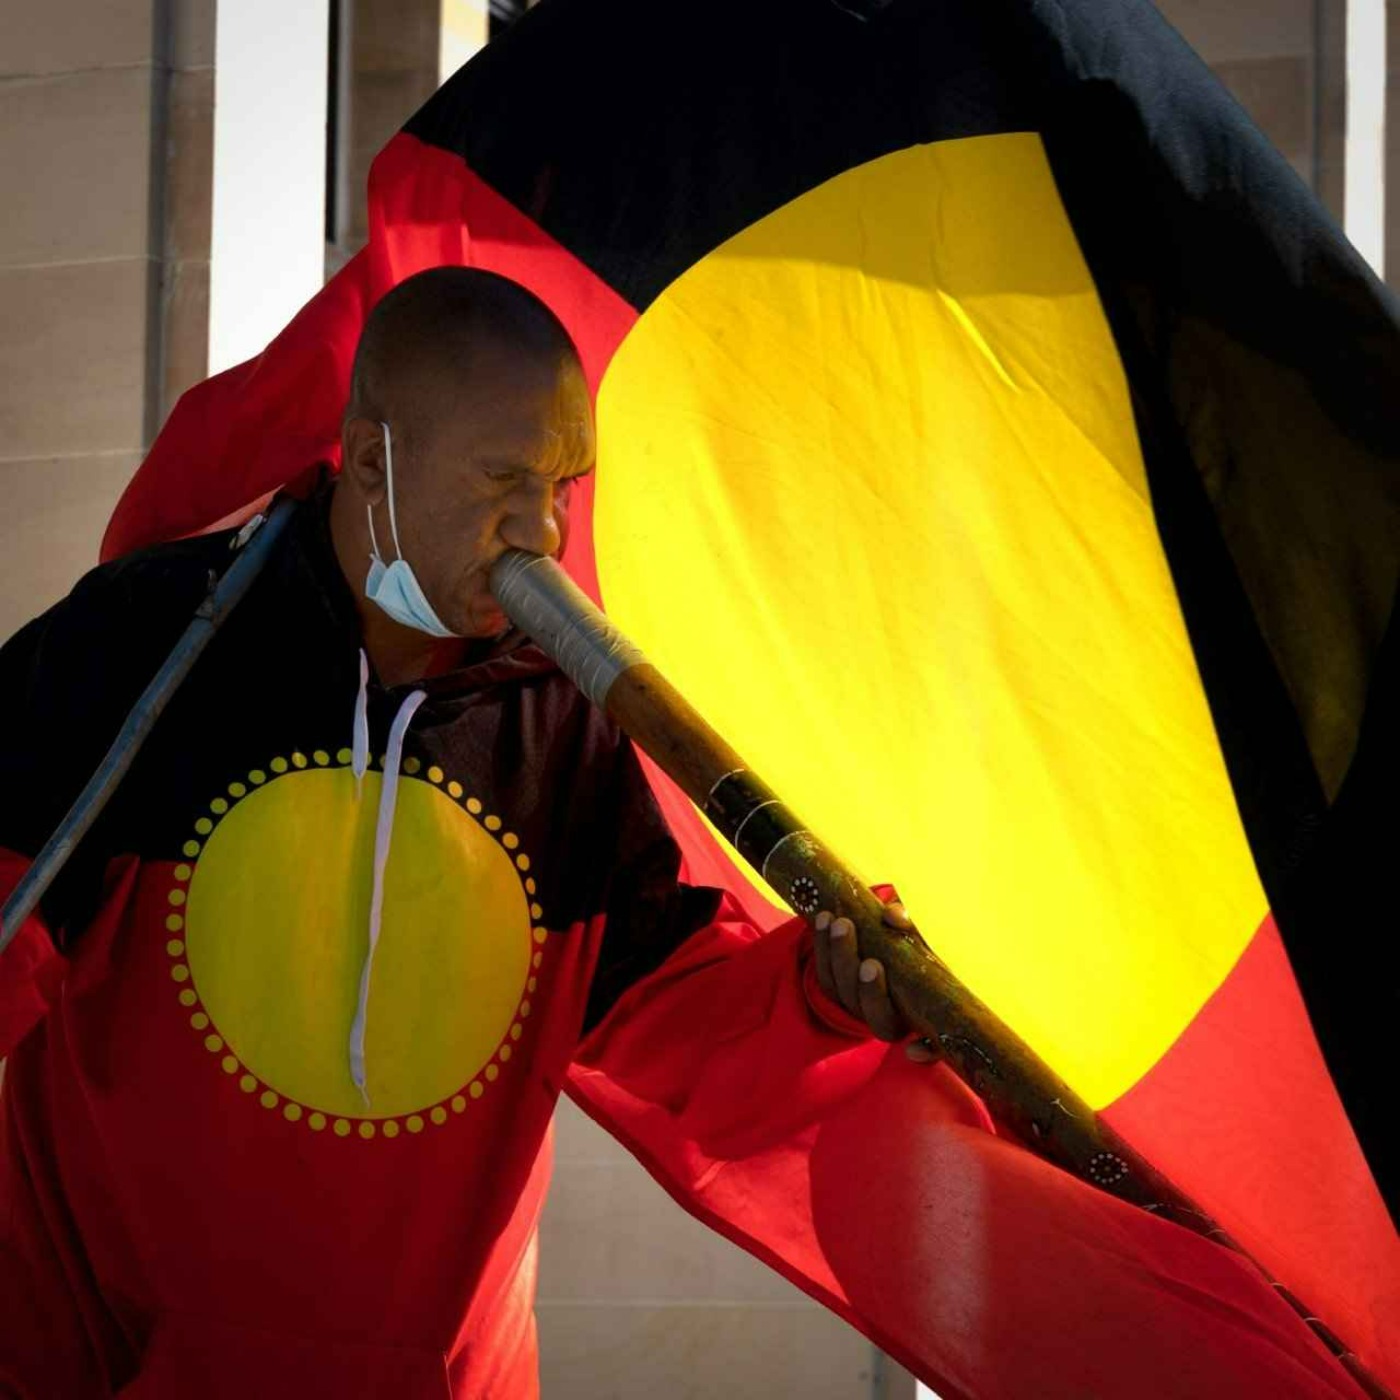 Des Blurton on Aboriginal deaths in custody and all-white juries